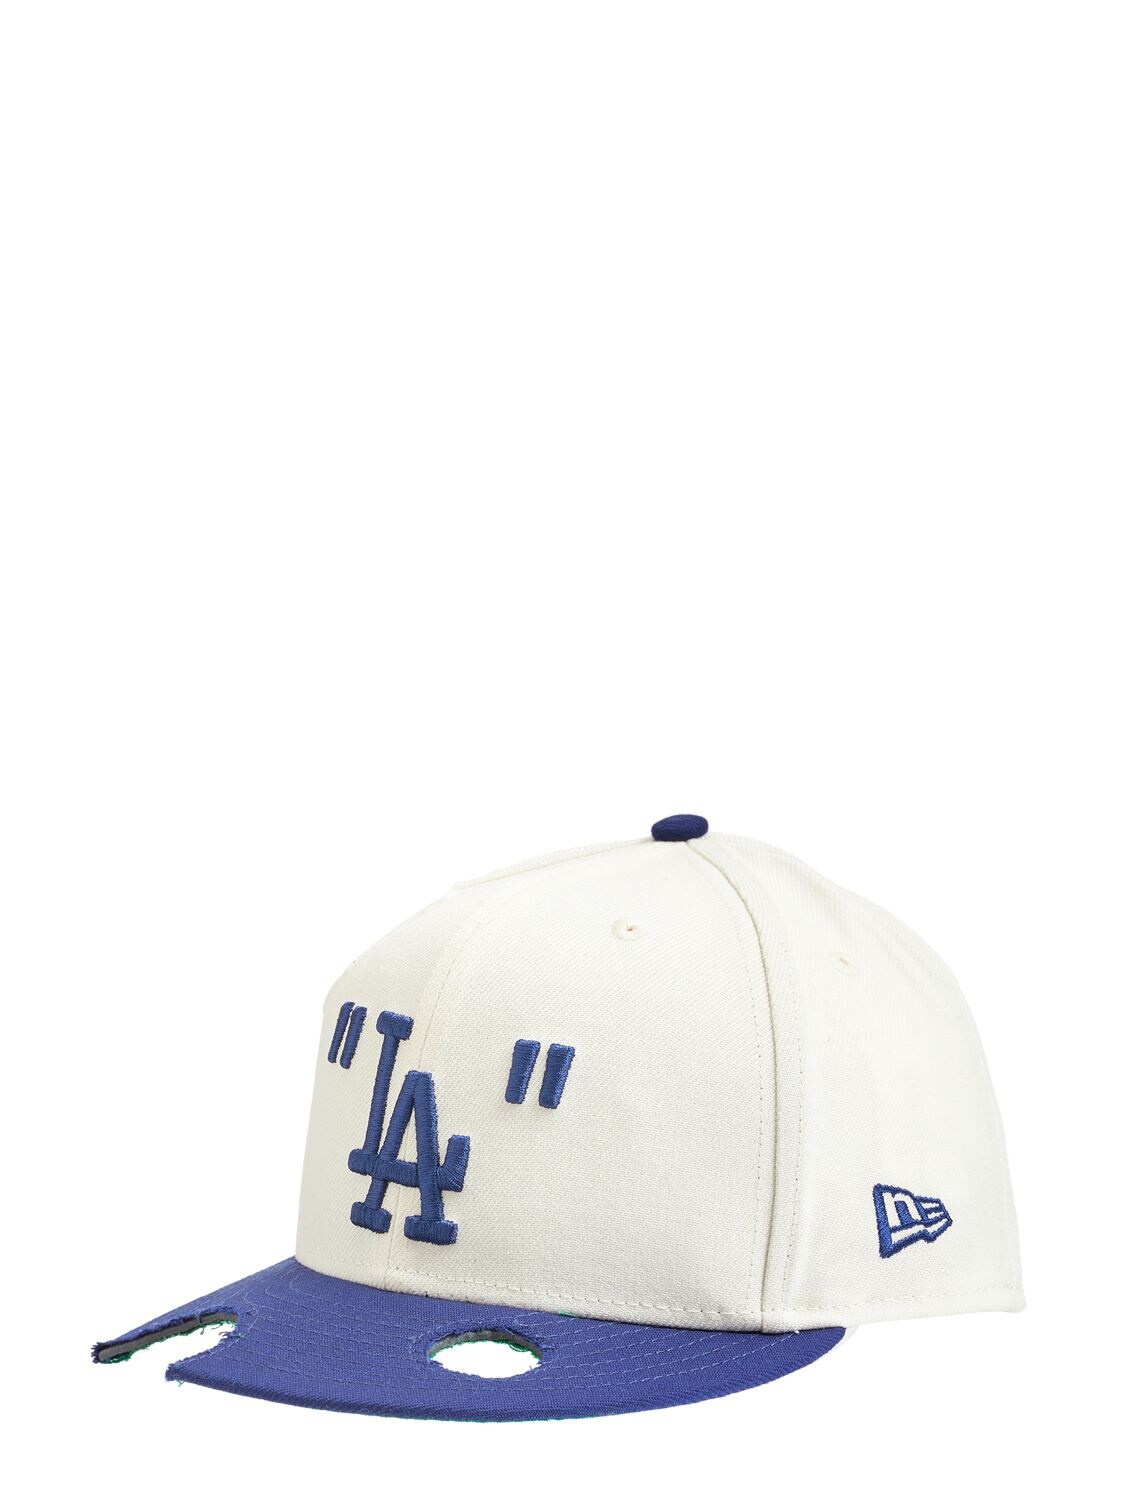 Off-white Mlb La Dodgers Wool Blend Baseball Cap